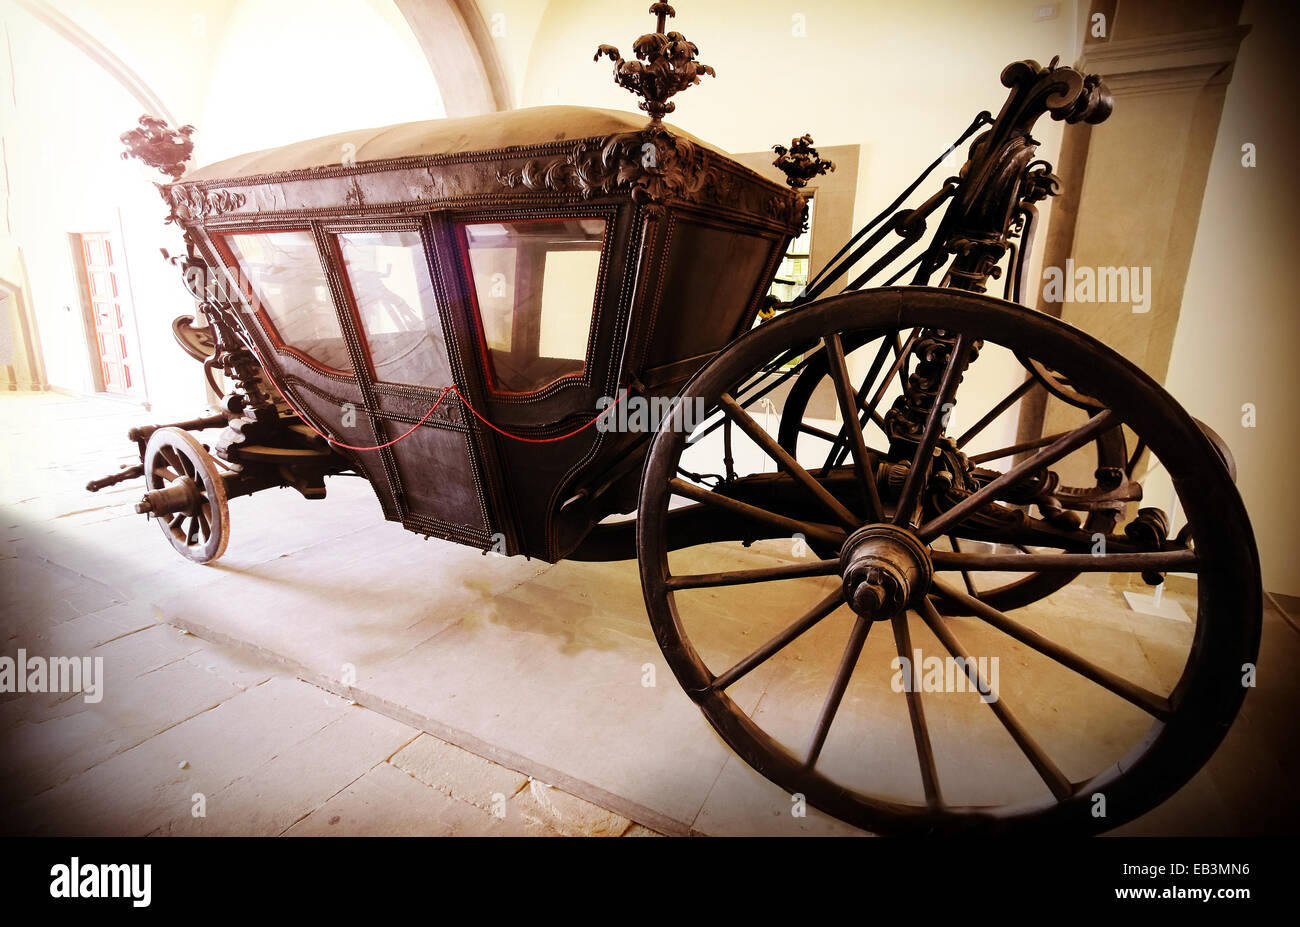 Retro vintage photo filtrée d'un vieux chariot en bois. Banque D'Images